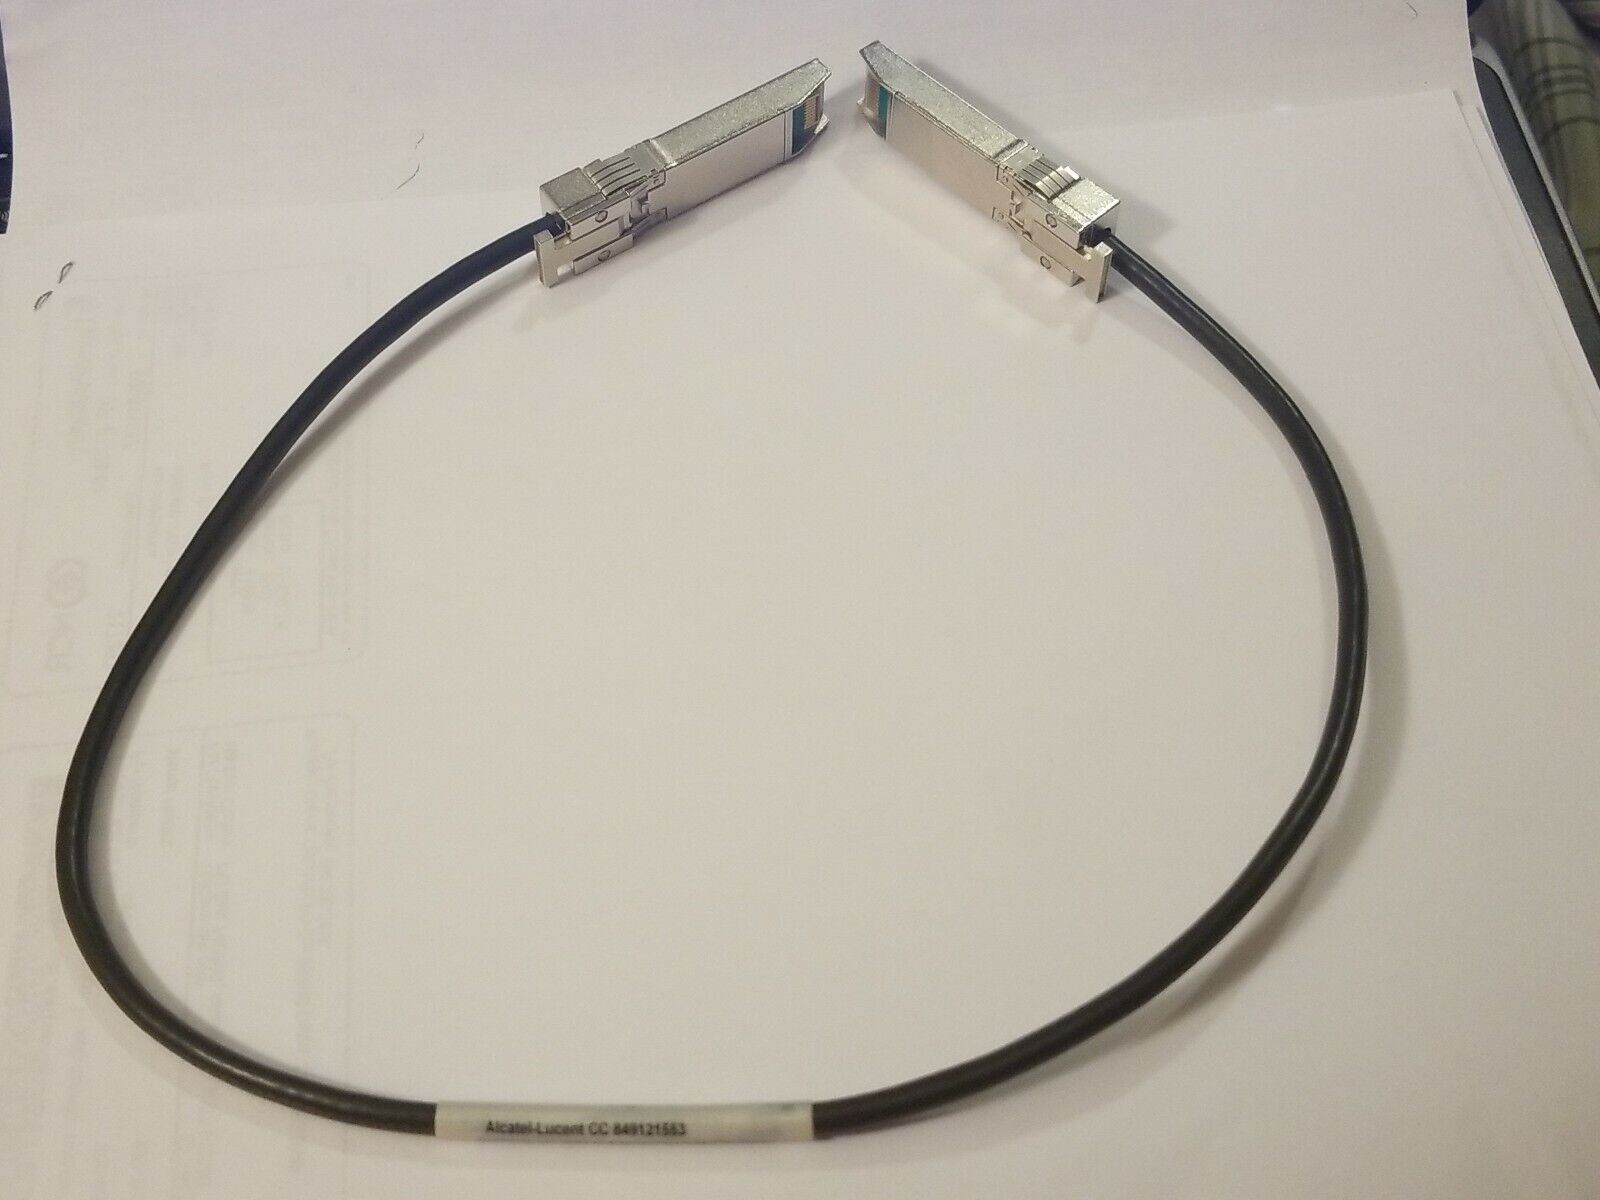 2 X NEW Amphenol 849121553 2FT SFP+ 10GbE Direct Attach Passive Copper Cable.